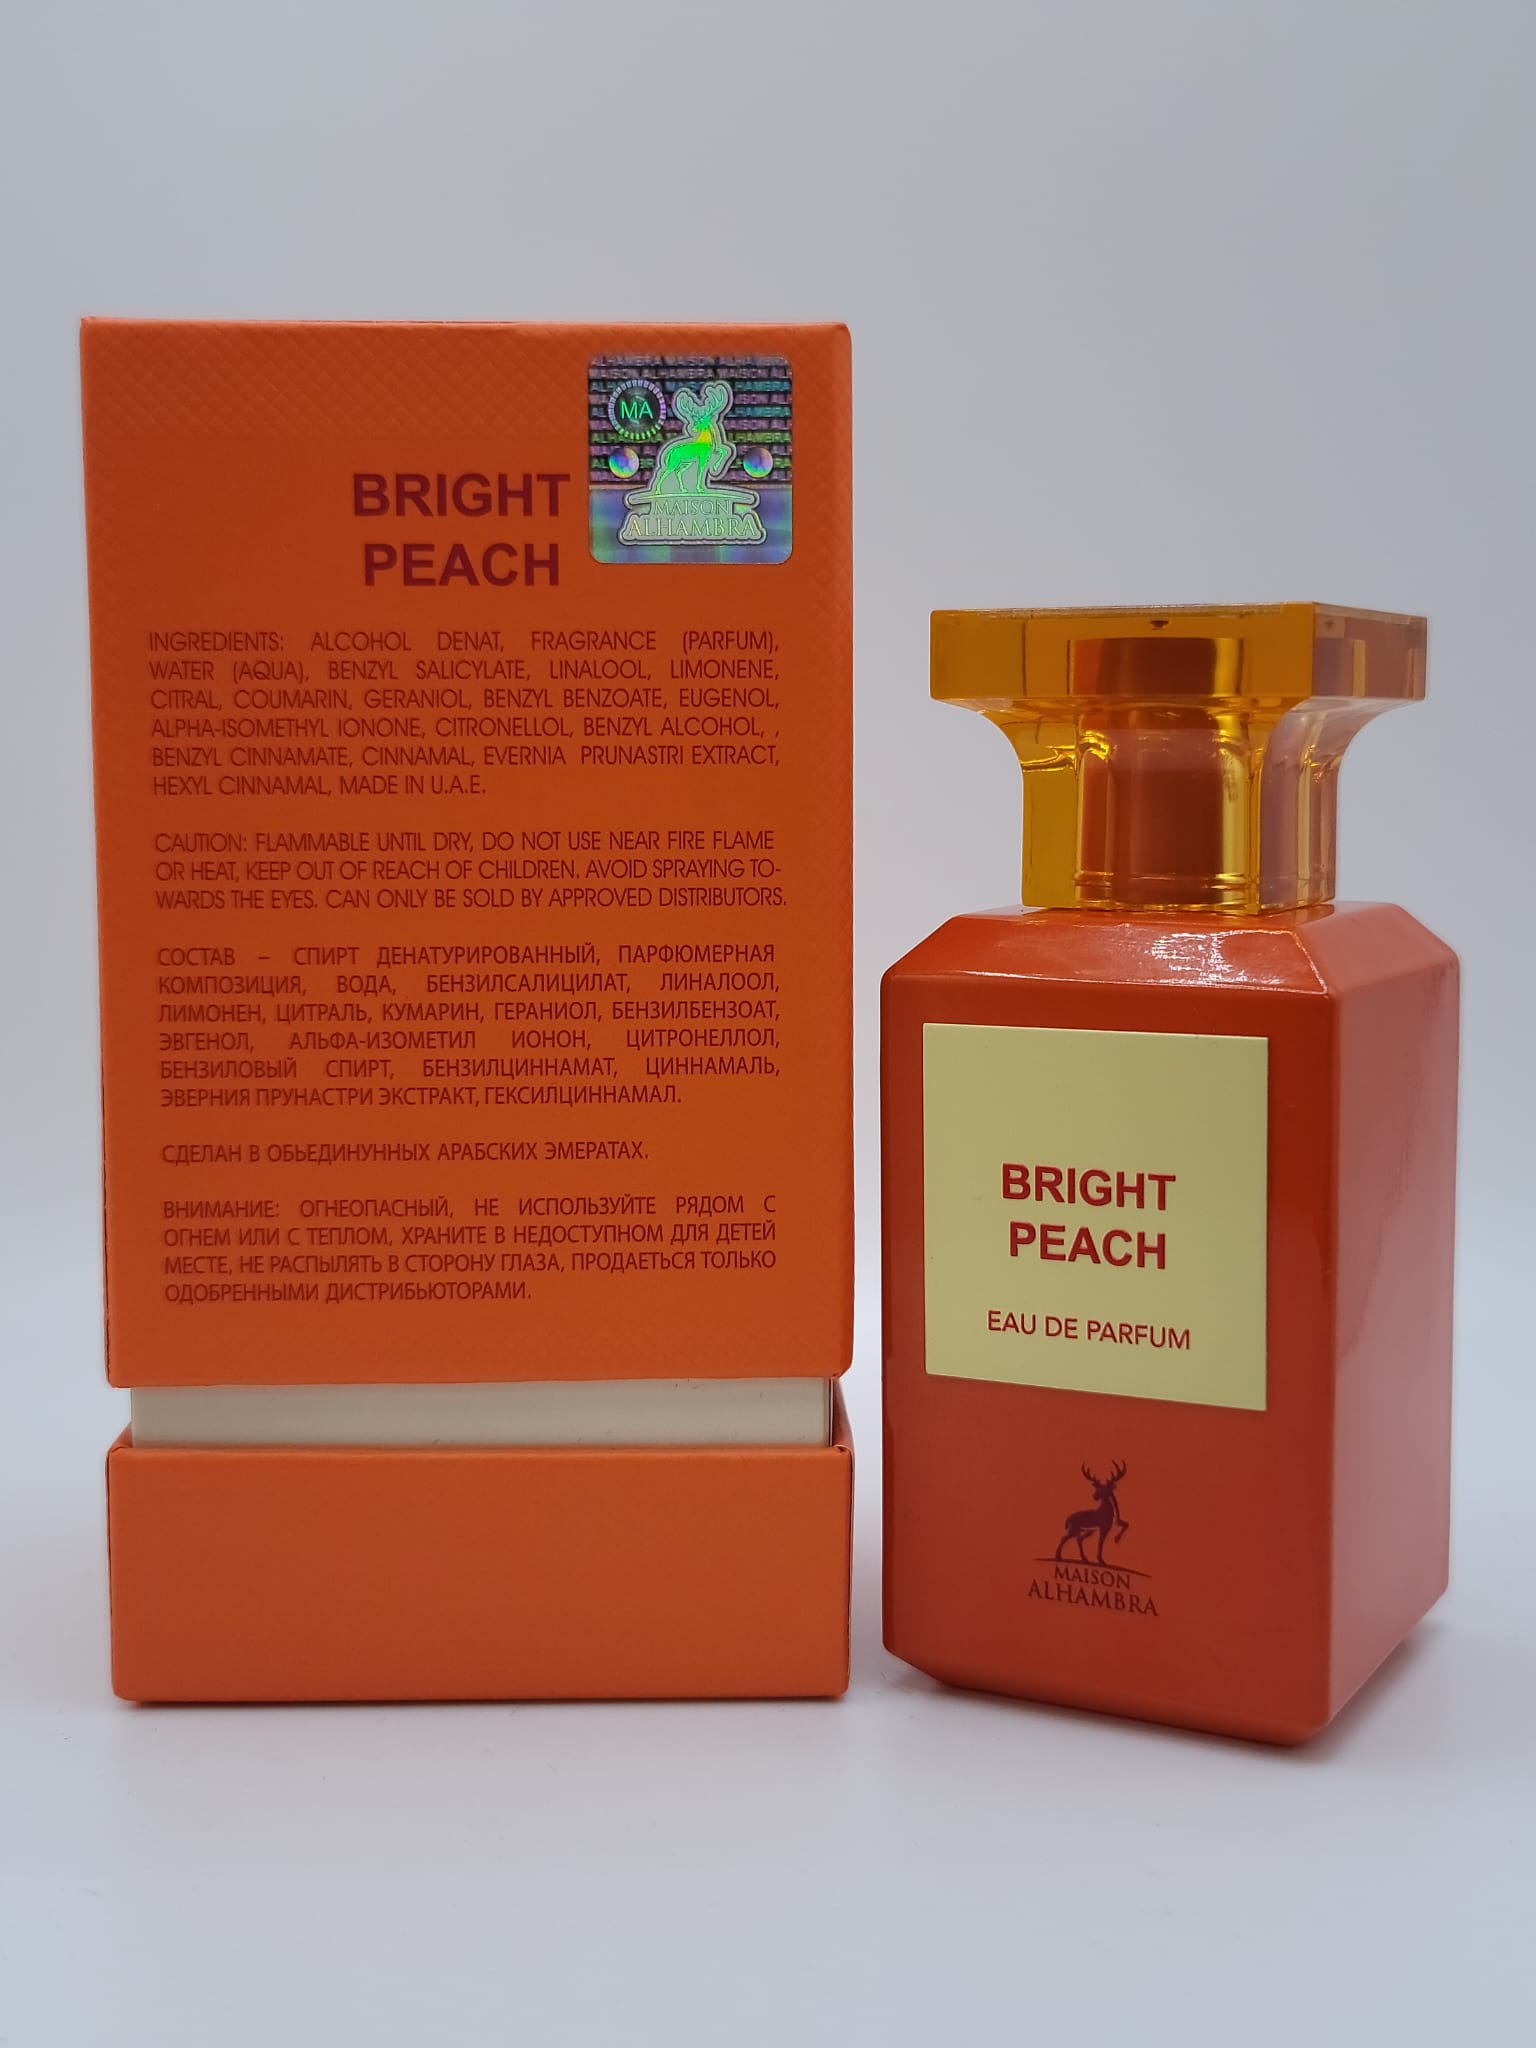 Bright Peach By Maison Alhambra 3.4 Oz Eau De Parfum Unisex Fruity